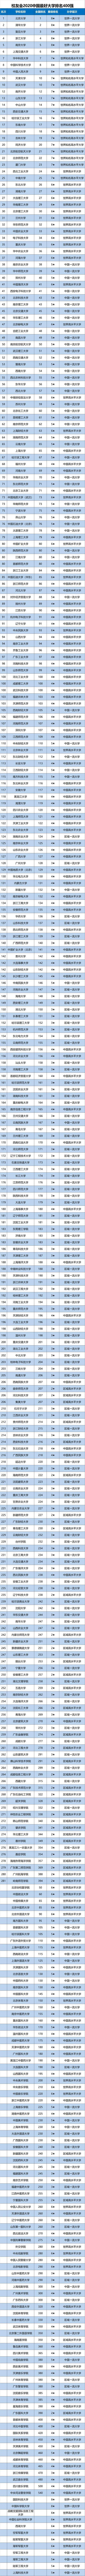 2020全国高校二本排_2020中国考研人气高校排名出炉!清华北大未进前十